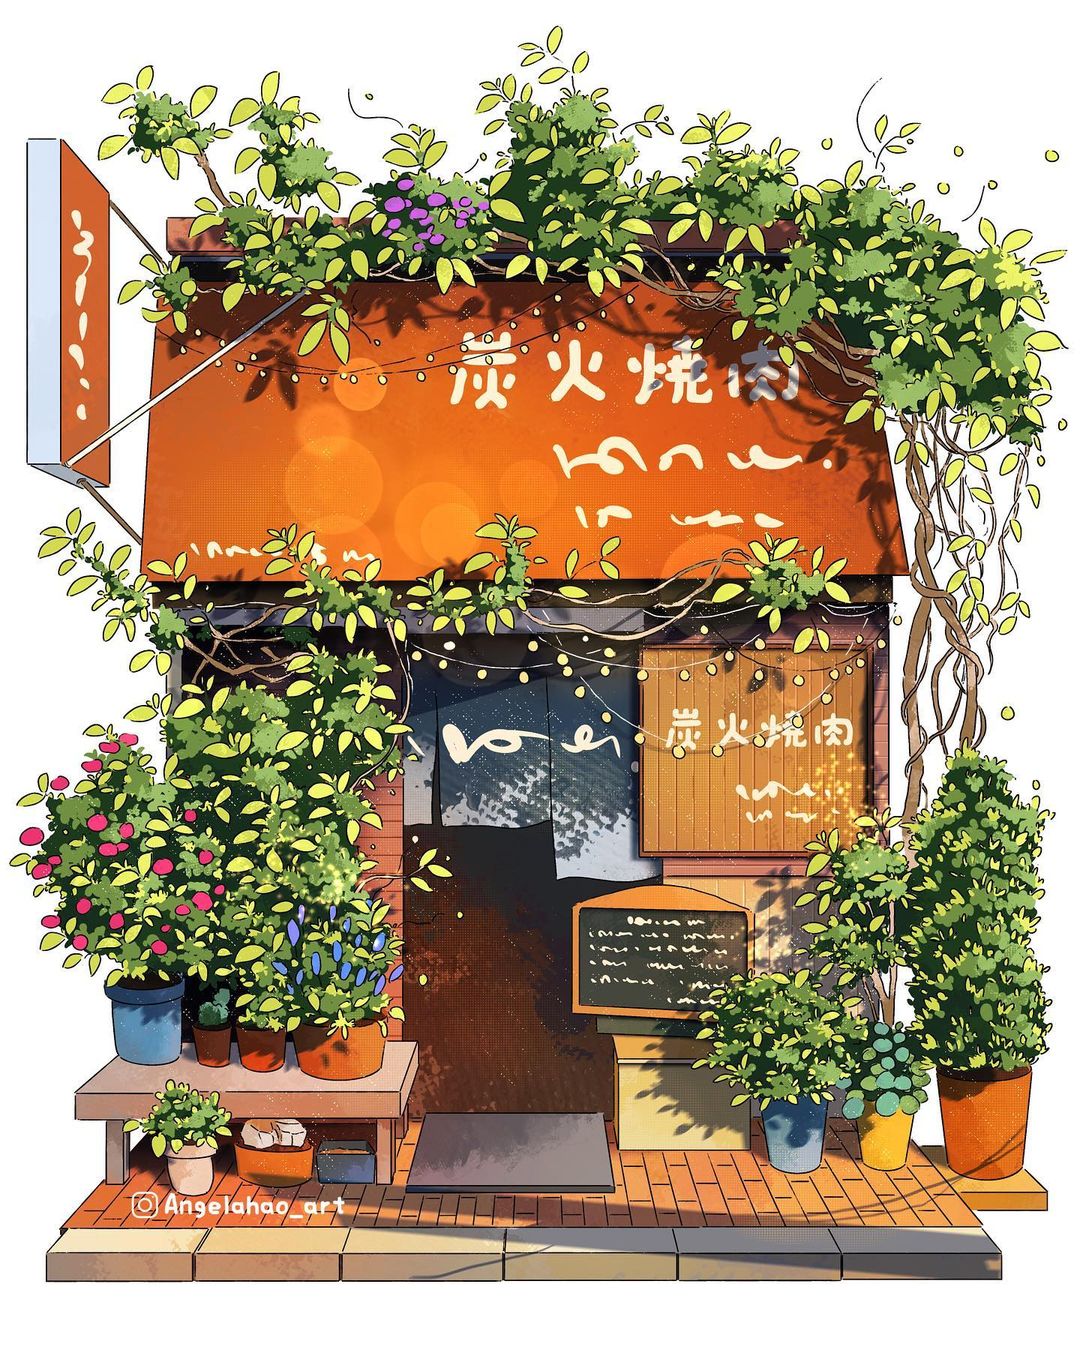 ilustraciones de tiendas japonesas por Angela Hao